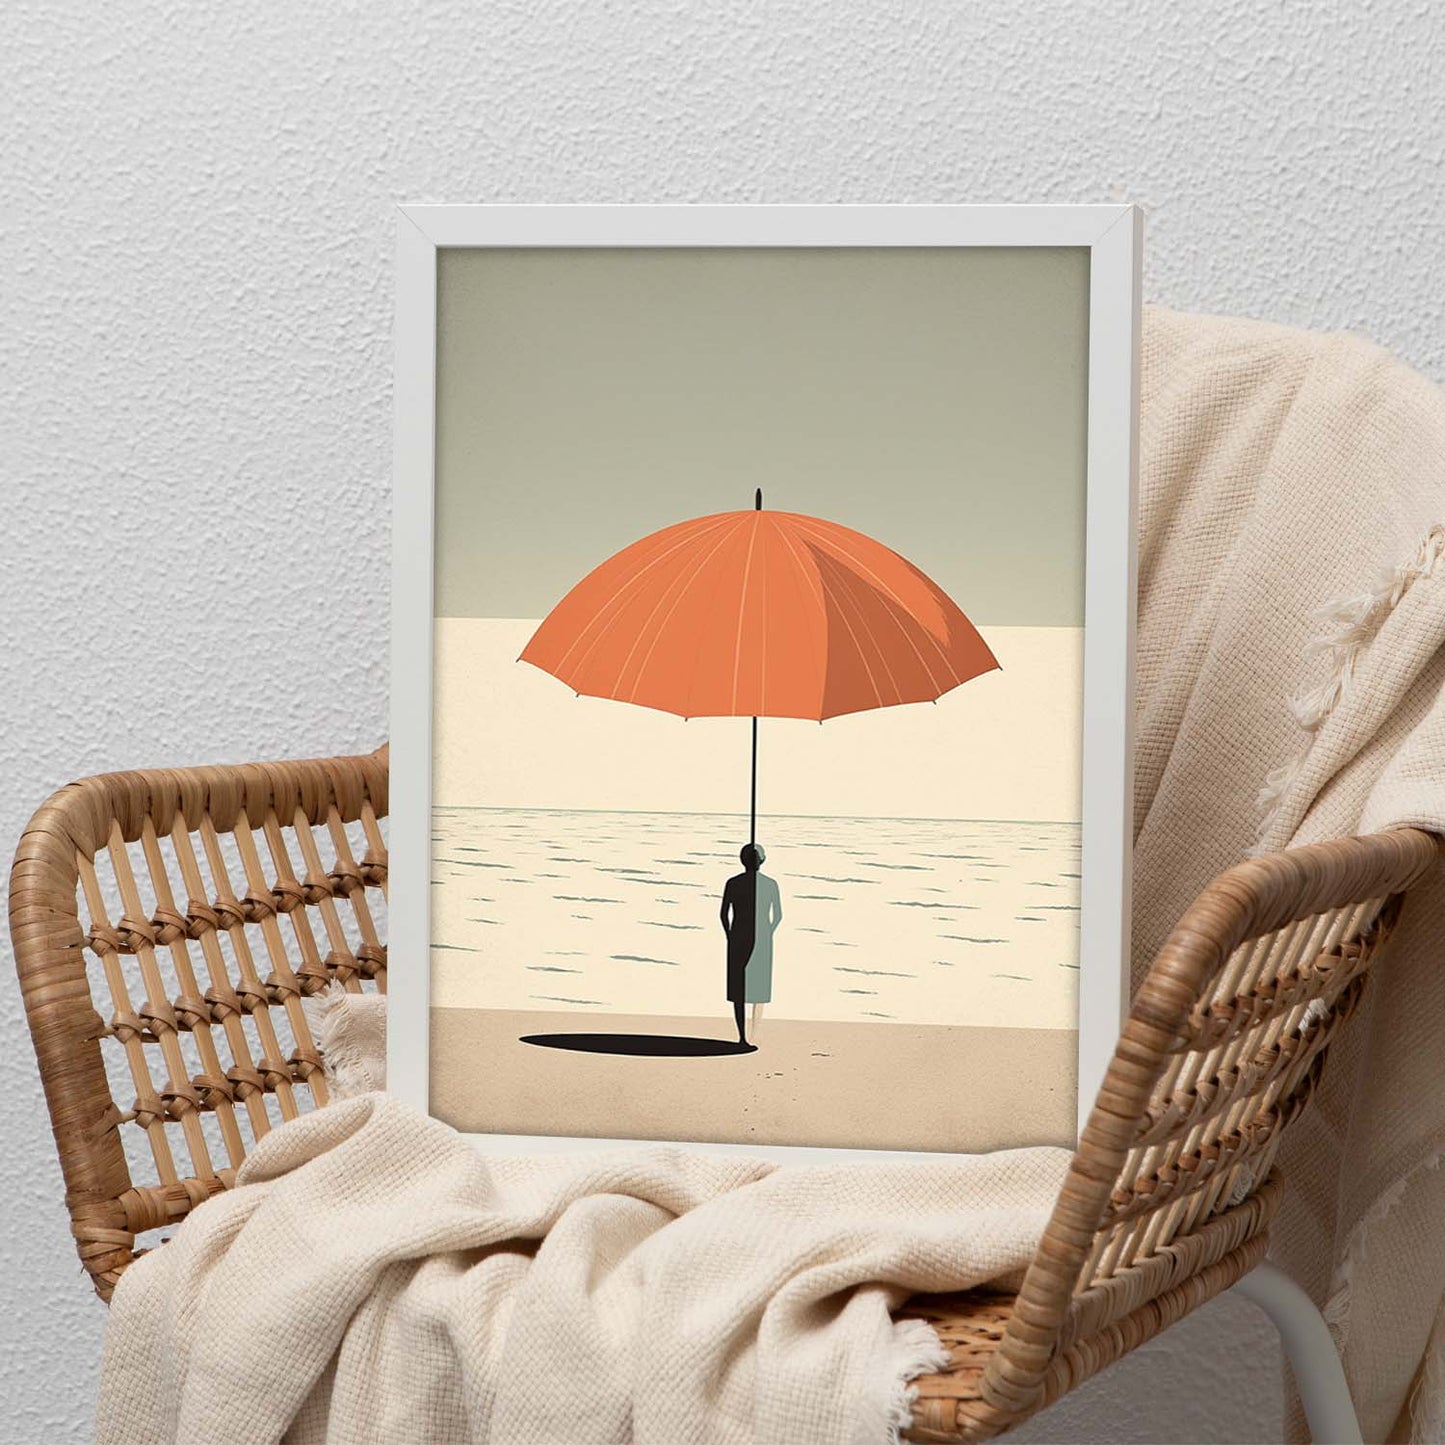 Lámina Gente de Playa con Sombrilla de Alessandro Gottardo